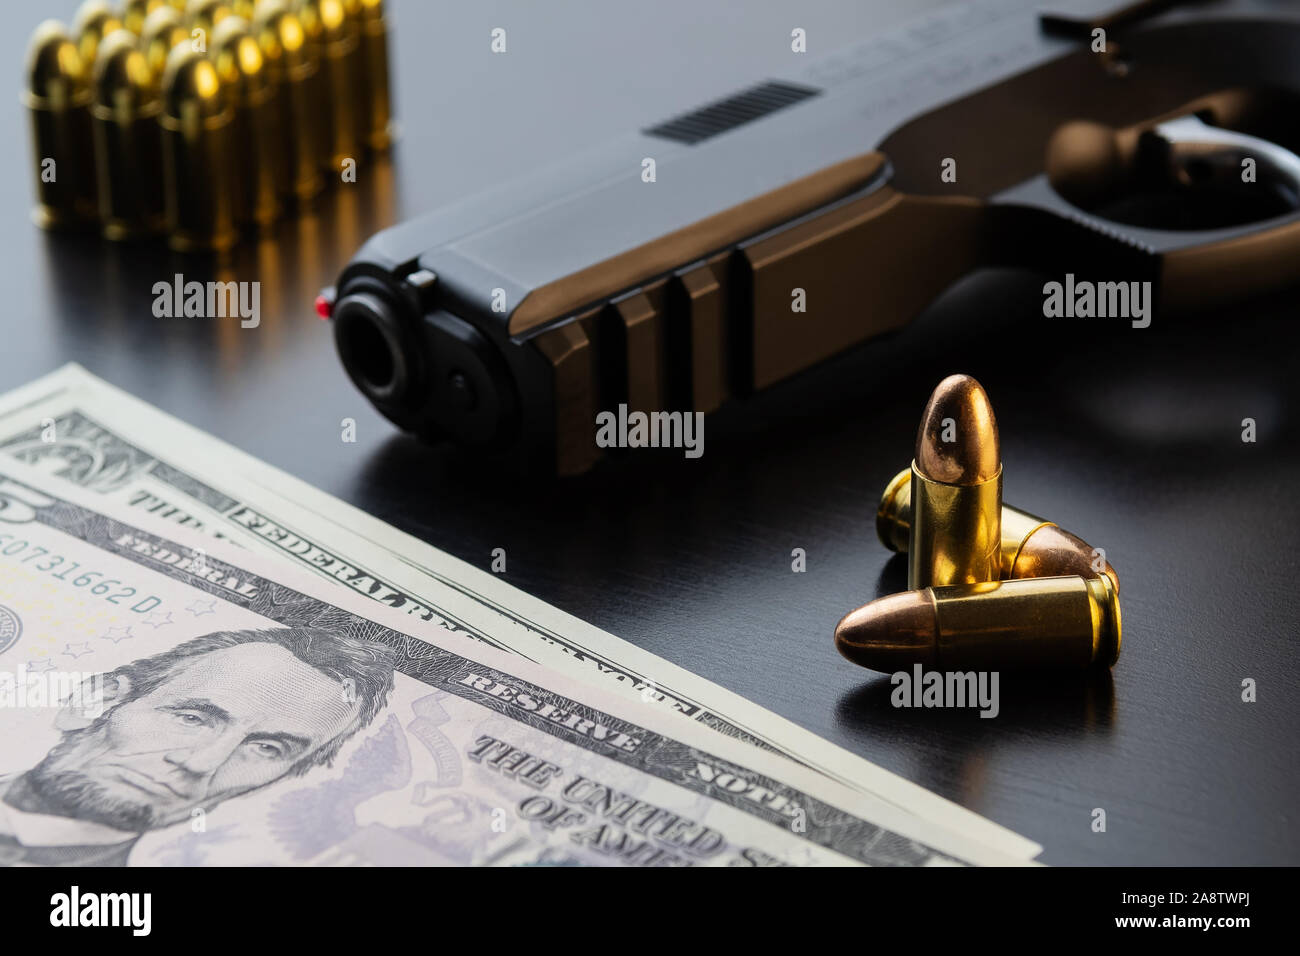 9 mm pistolet semi-automatique, full metal jacket les balles et les billets de dollar sur fond noir. Maquette conceptuelle du contrôle des armes à feu et le crime. Banque D'Images